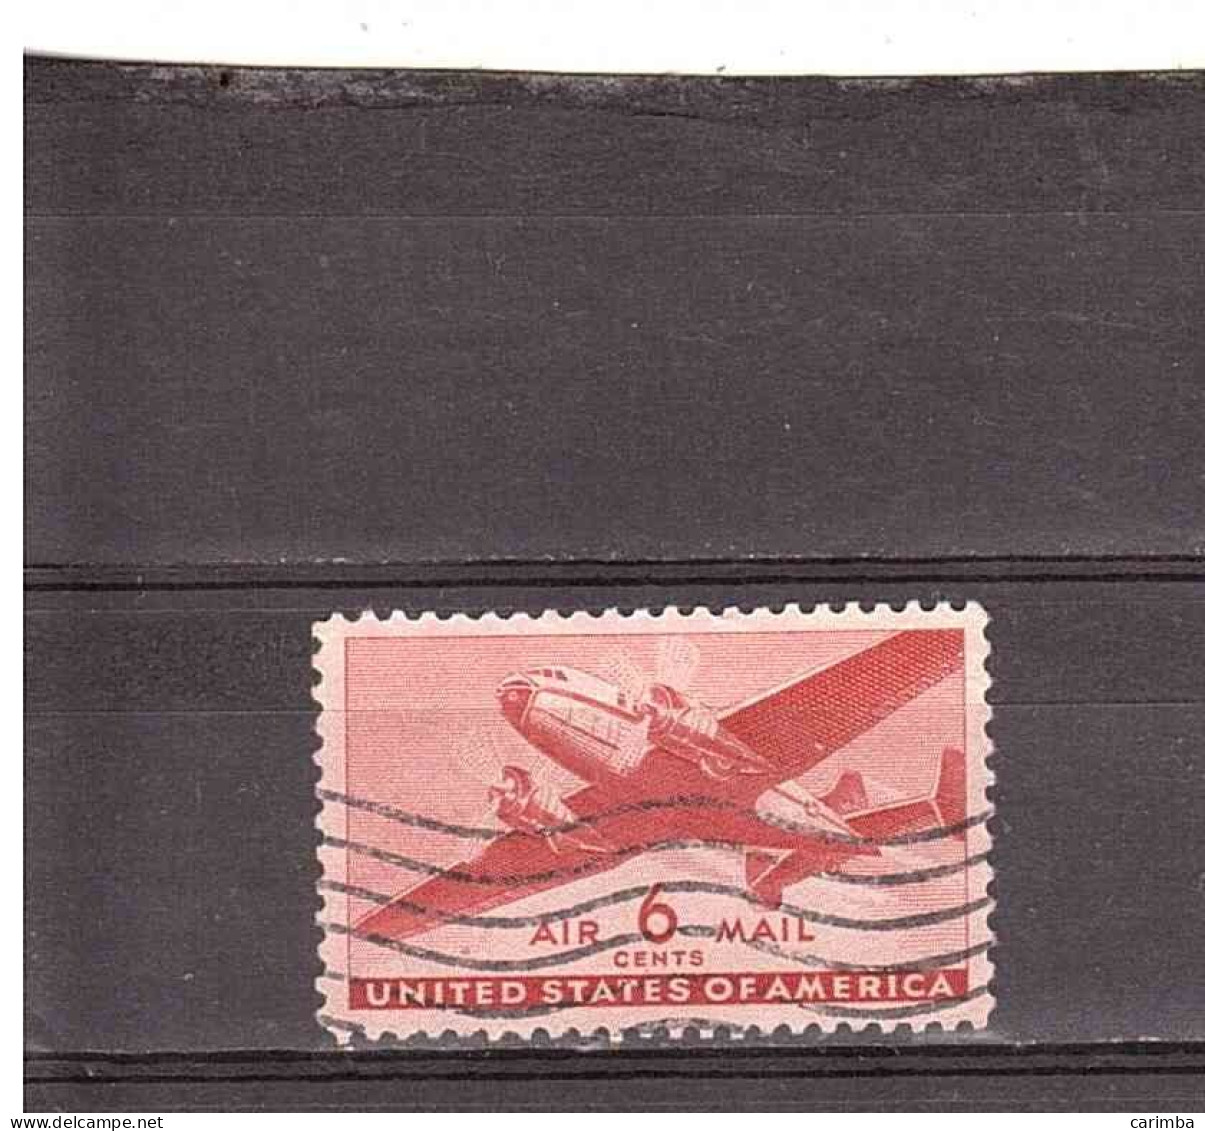 AIR MAIL 6 CENTS - 2a. 1941-1960 Gebraucht